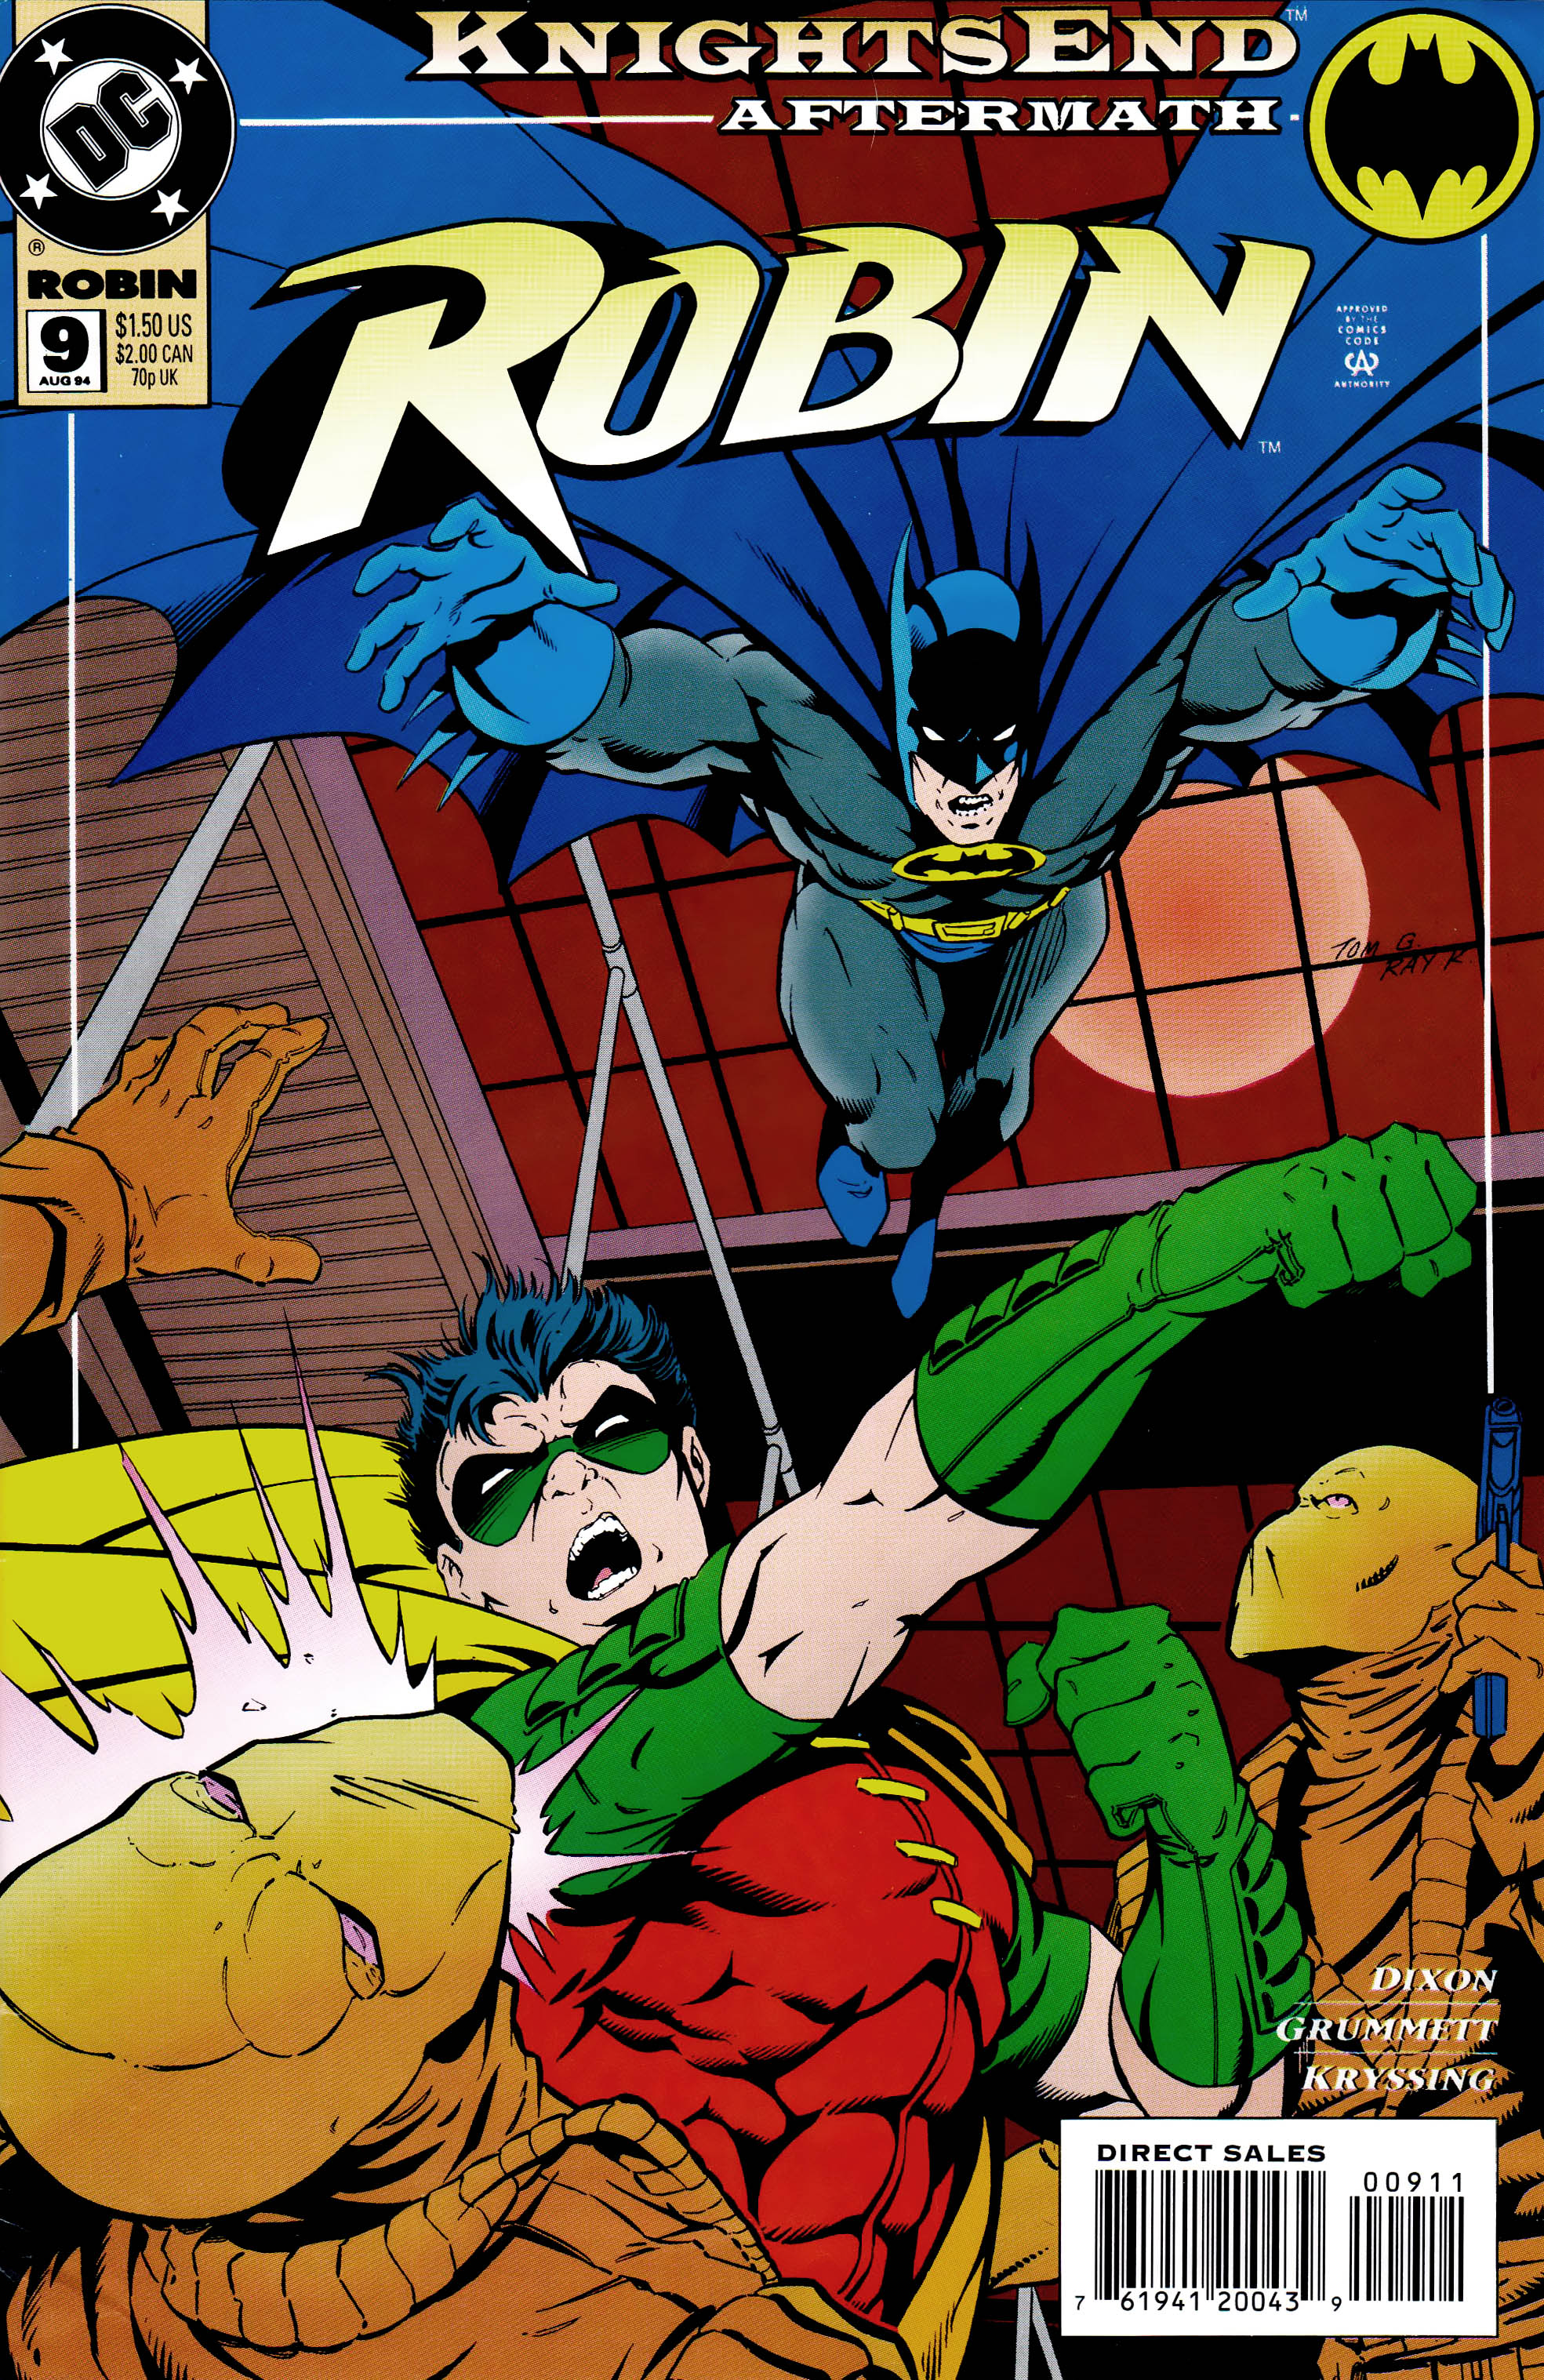 Robins comics. Робин комикс. Робин ДИСИ. Робин комикс выпуск 1. Бэтмен и Робин комикс.